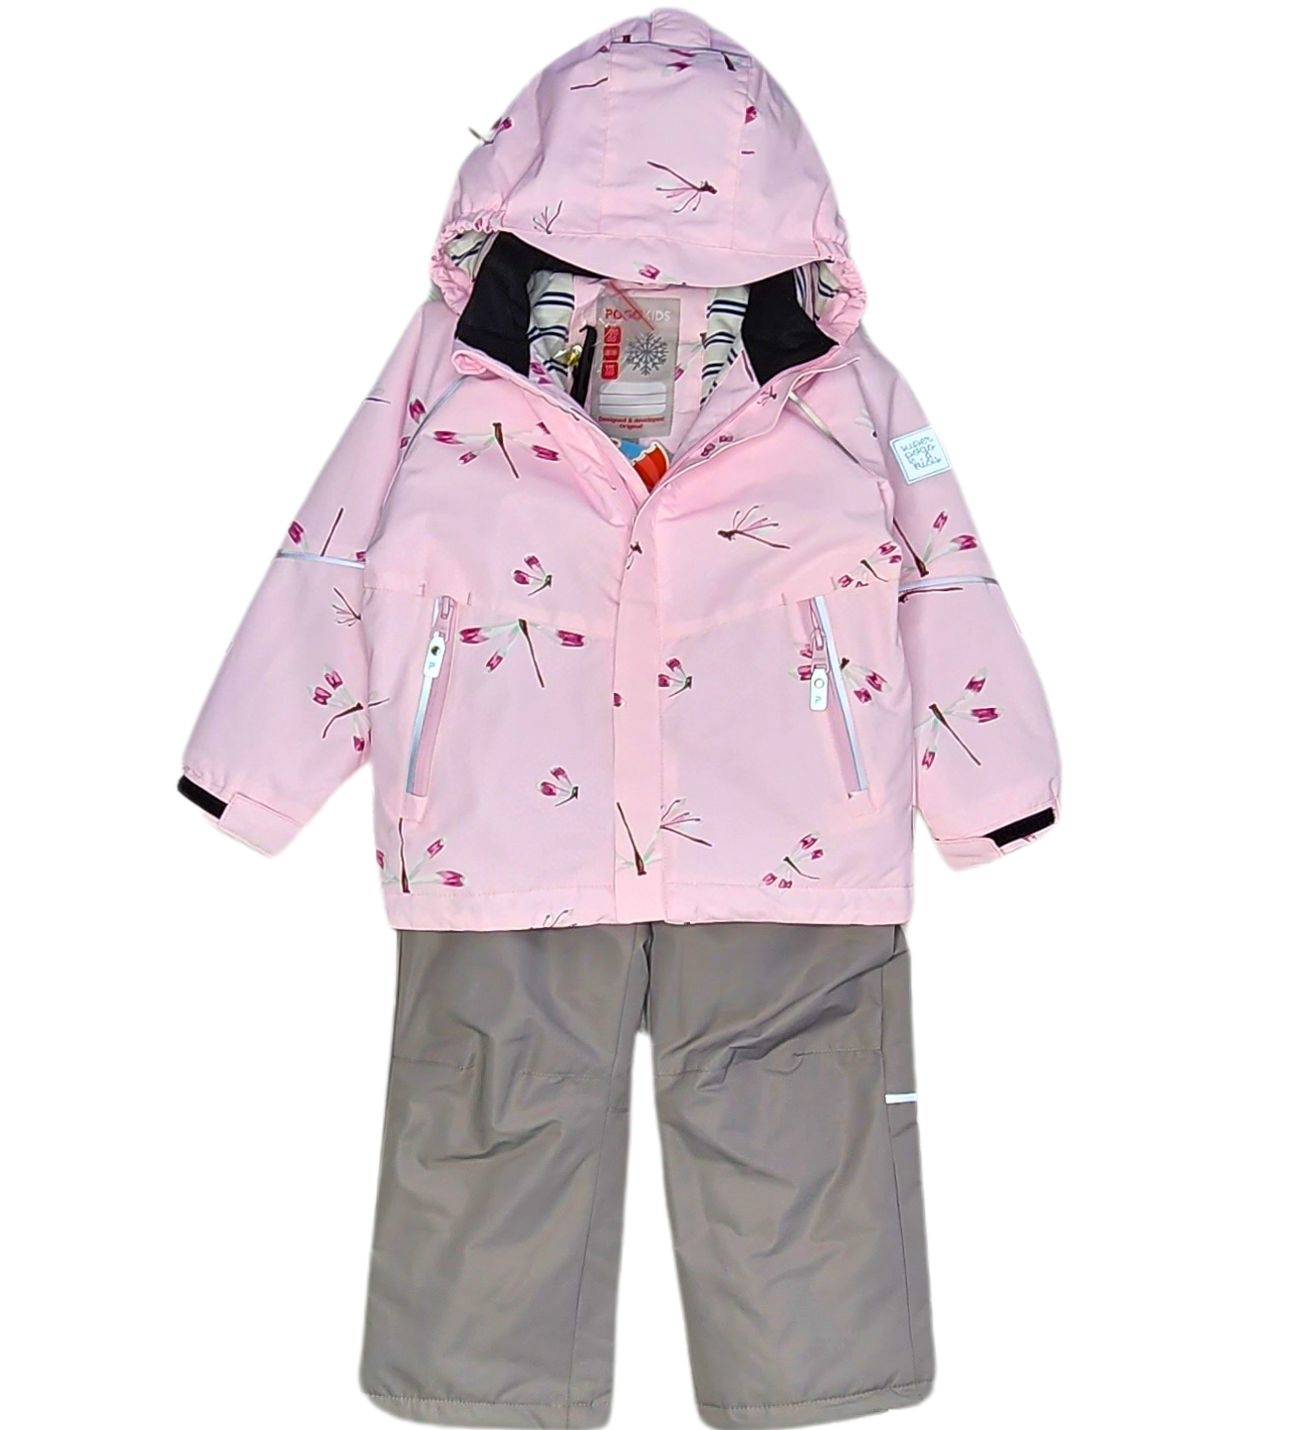 Комплект верхней одежды PogoKids PG88268, розовый, 110